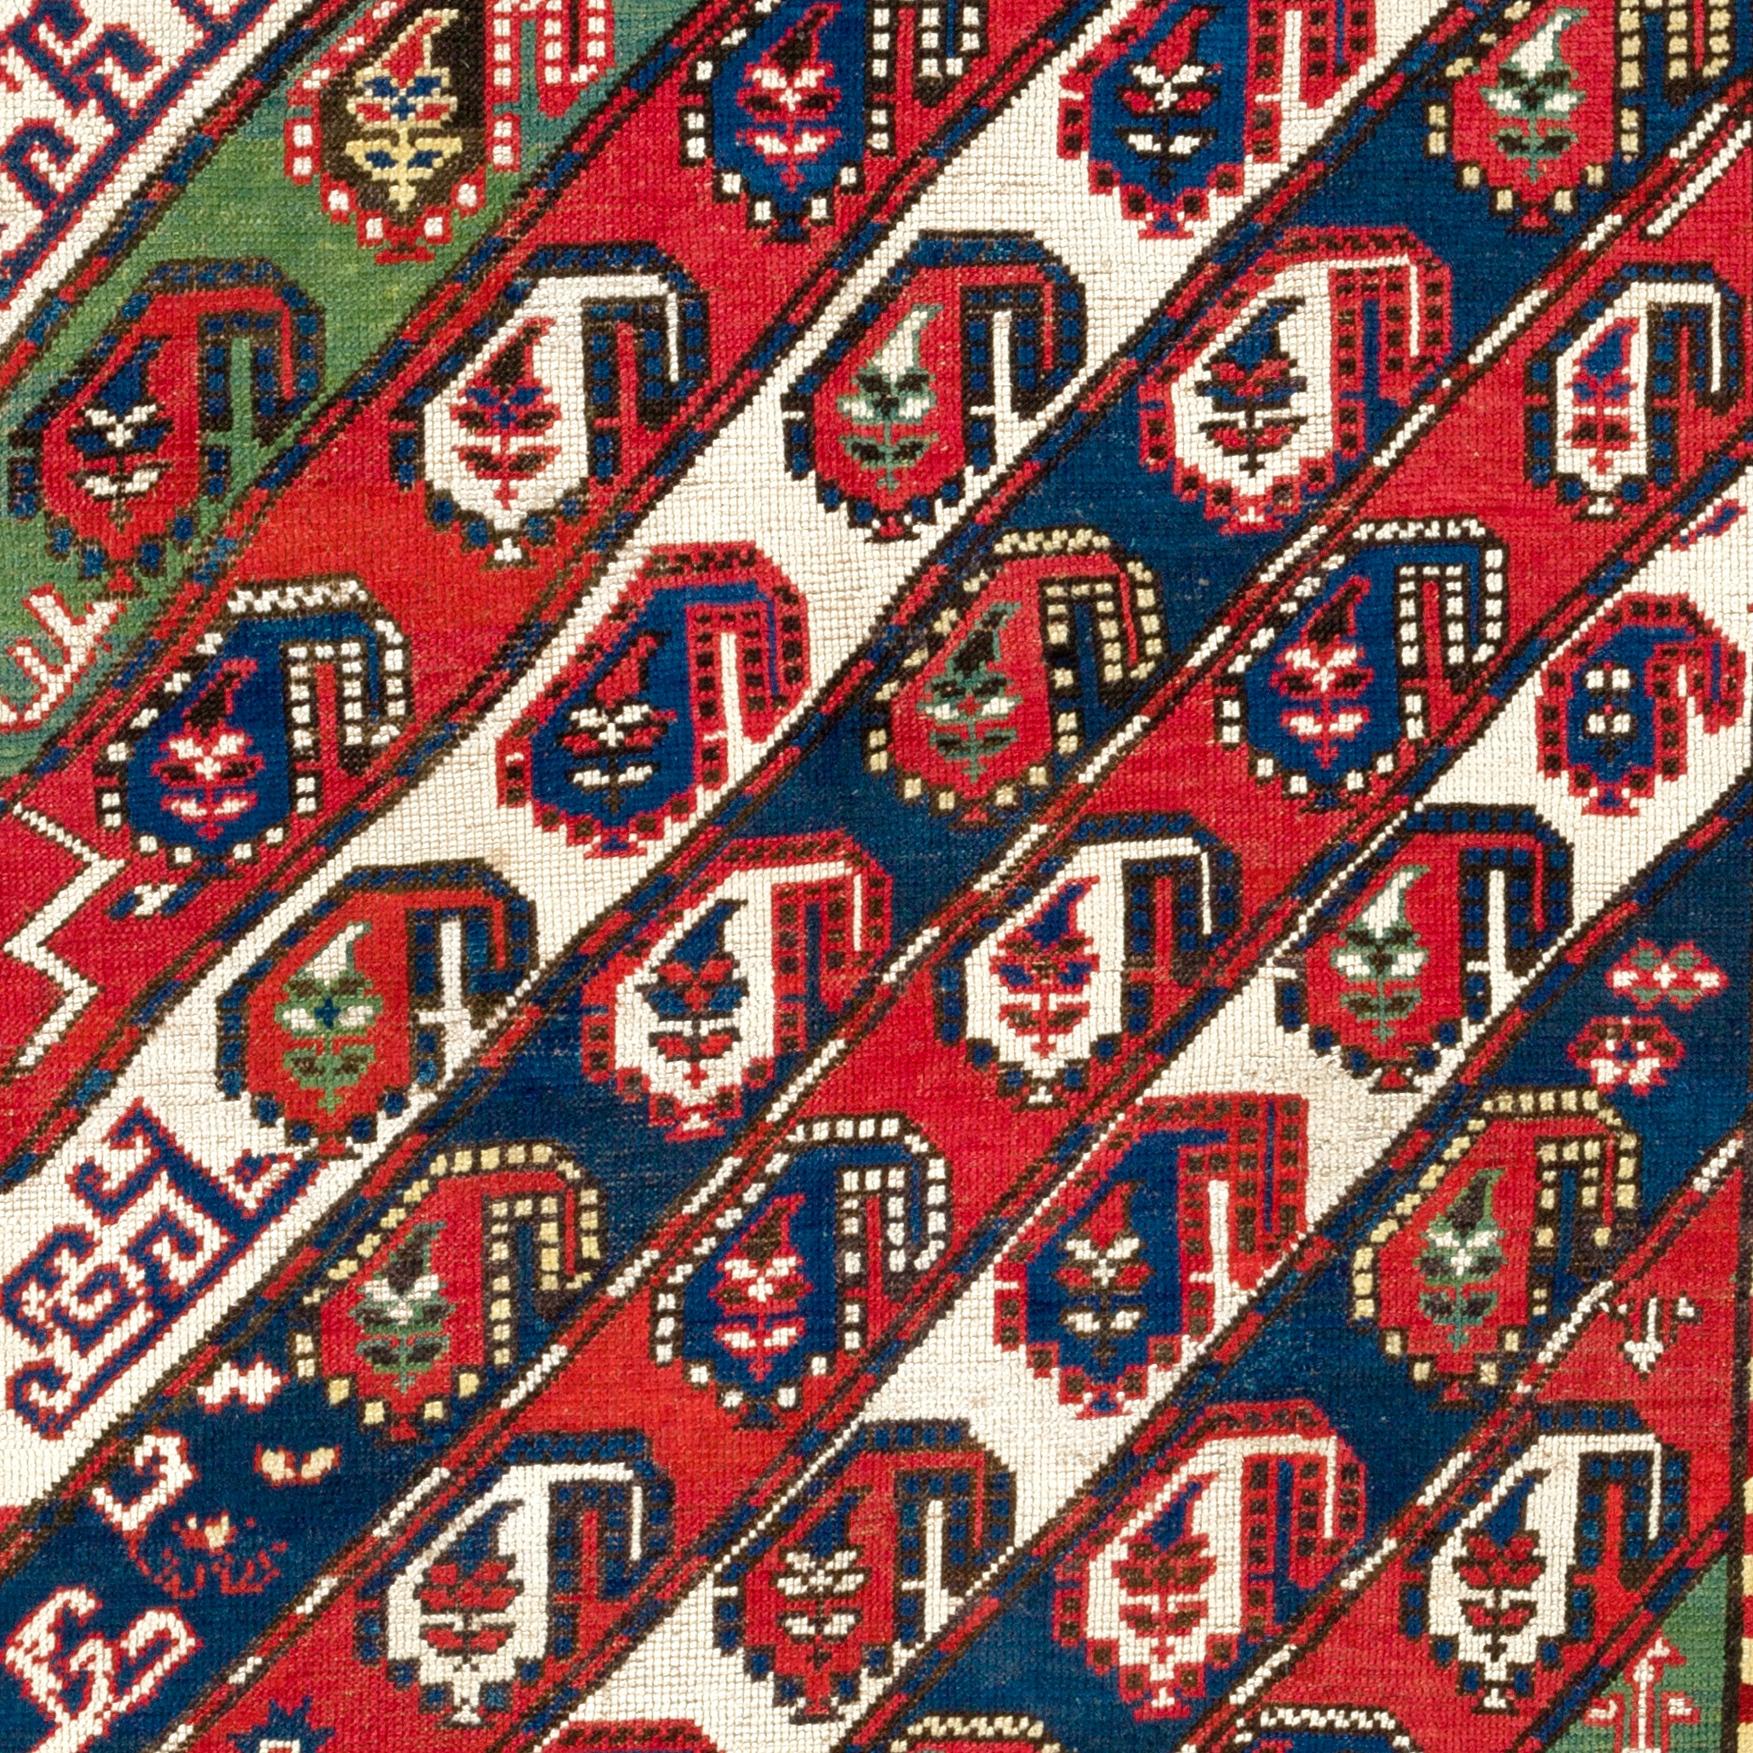 Ancien tapis caucasien Gendje Kazak avec des bandes diagonales décorées de Botehs et d'autres petits éléments de design attrayants et avec une bordure rouge représentant de nombreuses fleurs. Taille : 4.4 x 7.3 Ft
100% laine et teintures naturelles.